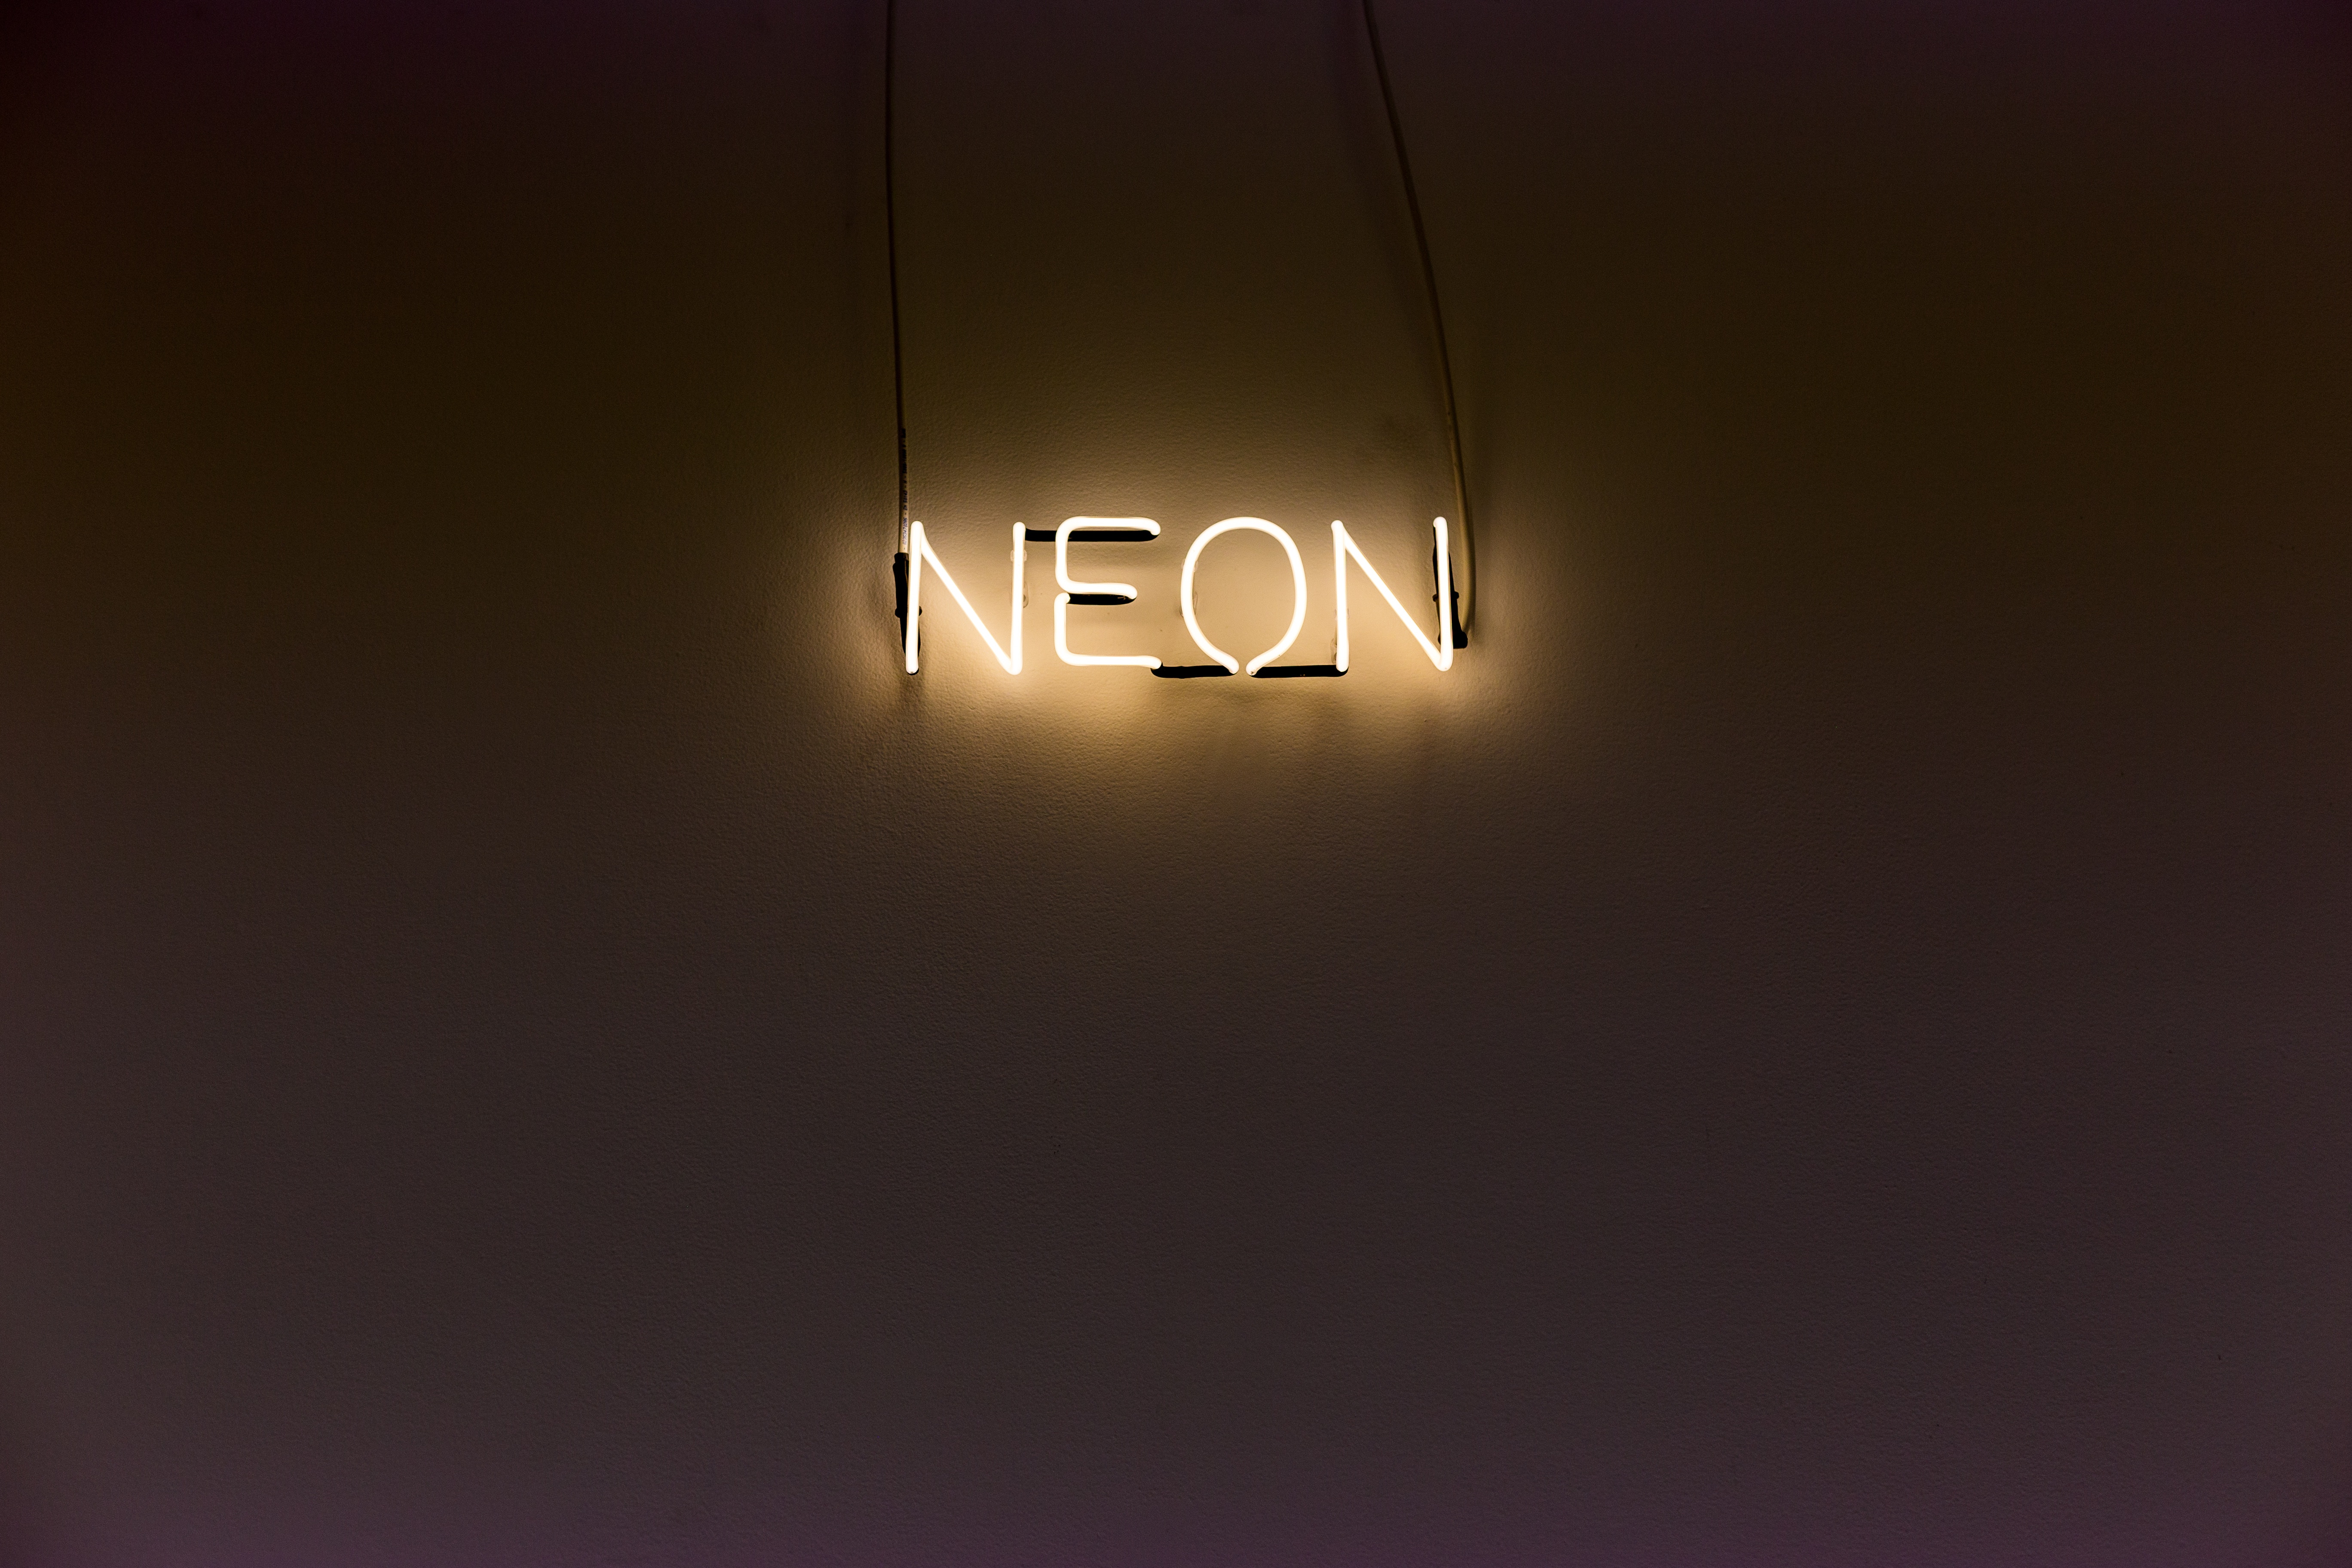 neon, inscription, wall, illumination, backlight, words 32K